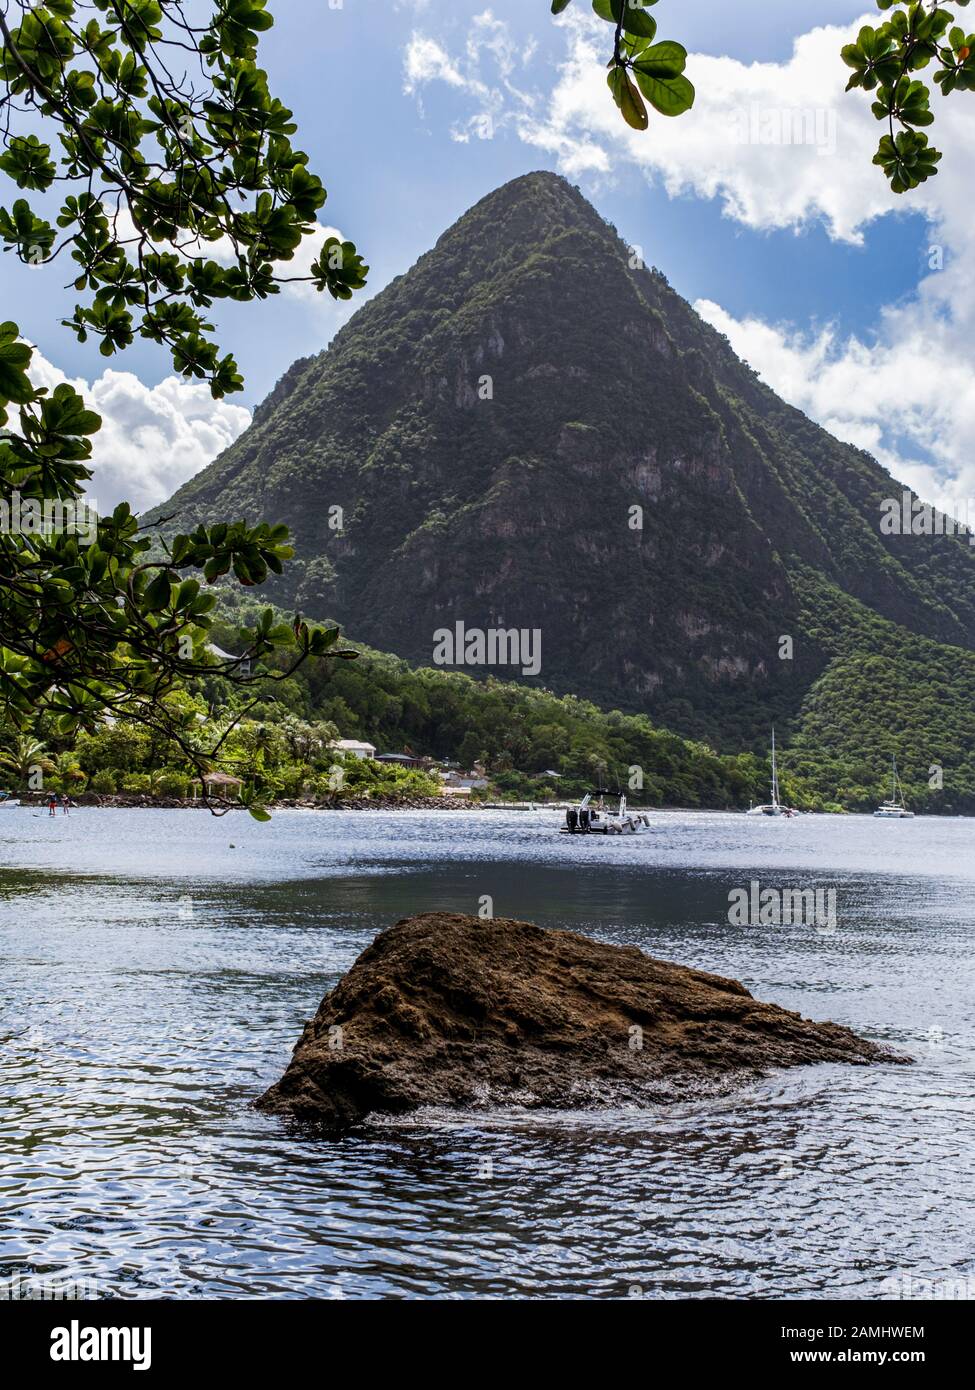 Vista De Gros Piton Al Otro Lado De Piton Bay, Patrimonio De La Humanidad Por La Unesco, Santa Lucía, Indias Occidentales, Caribe Foto de stock